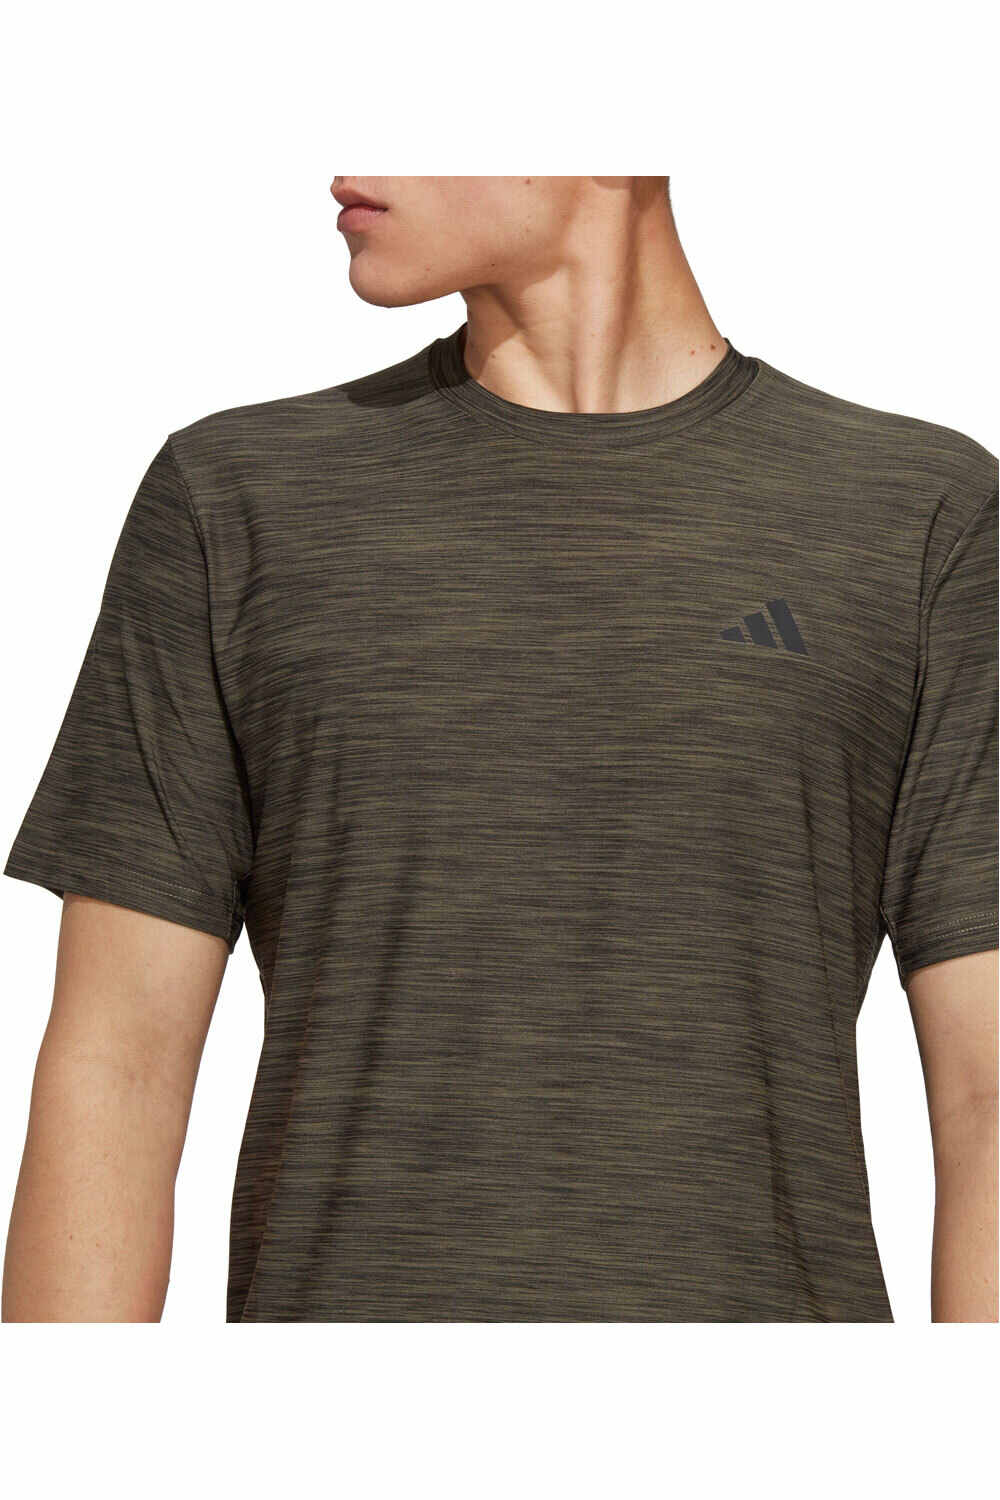 adidas camiseta fitness hombre TR-ES STRETCH T 03